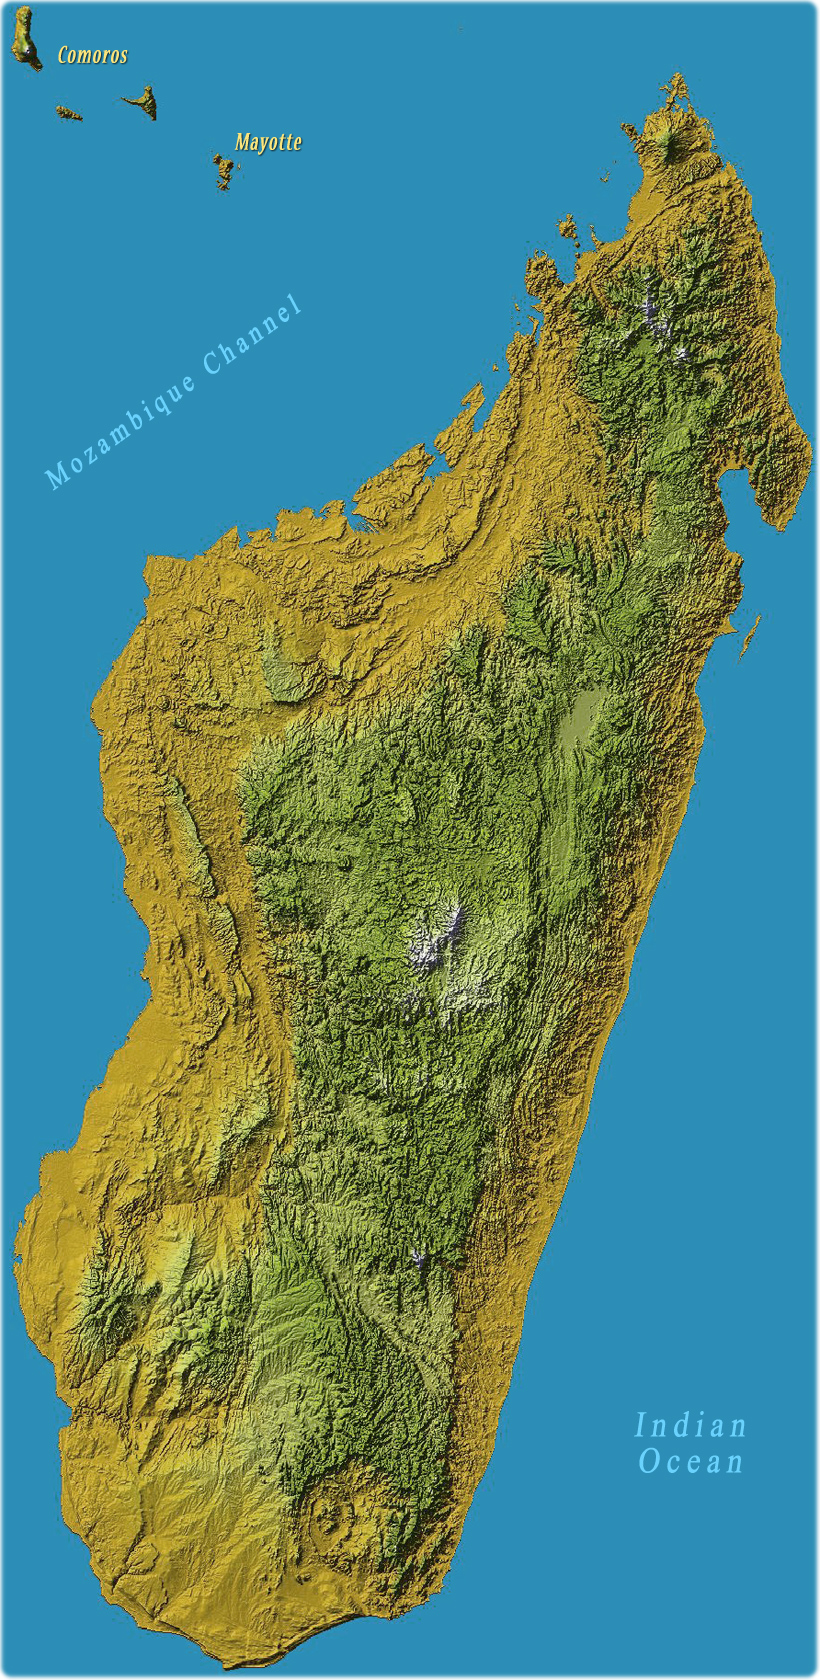 Madagascar Island